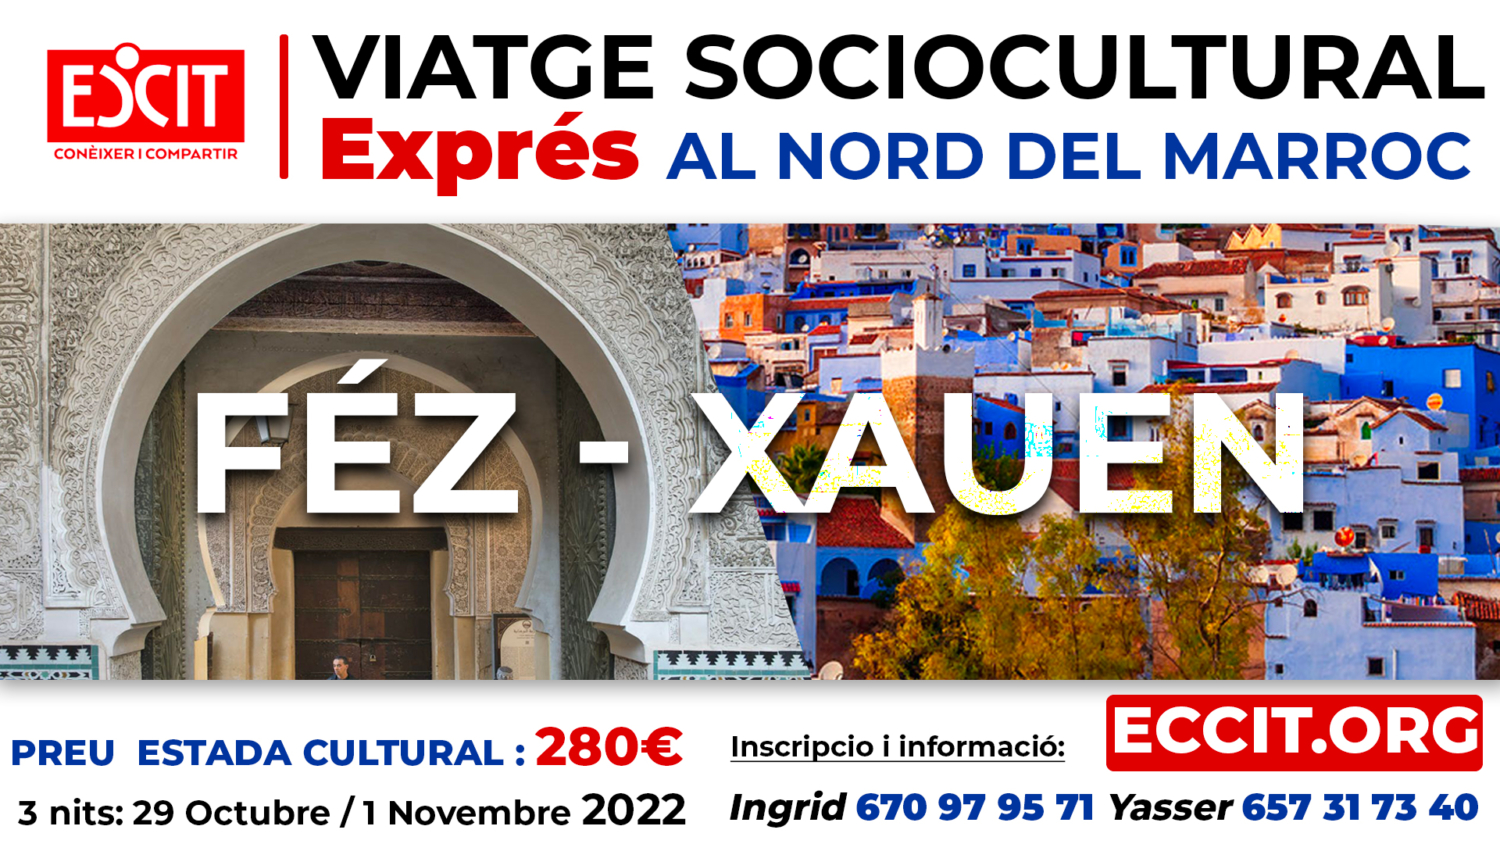 Viatge sociocultural Exprés al nord del Marroc: Féz-Xauen